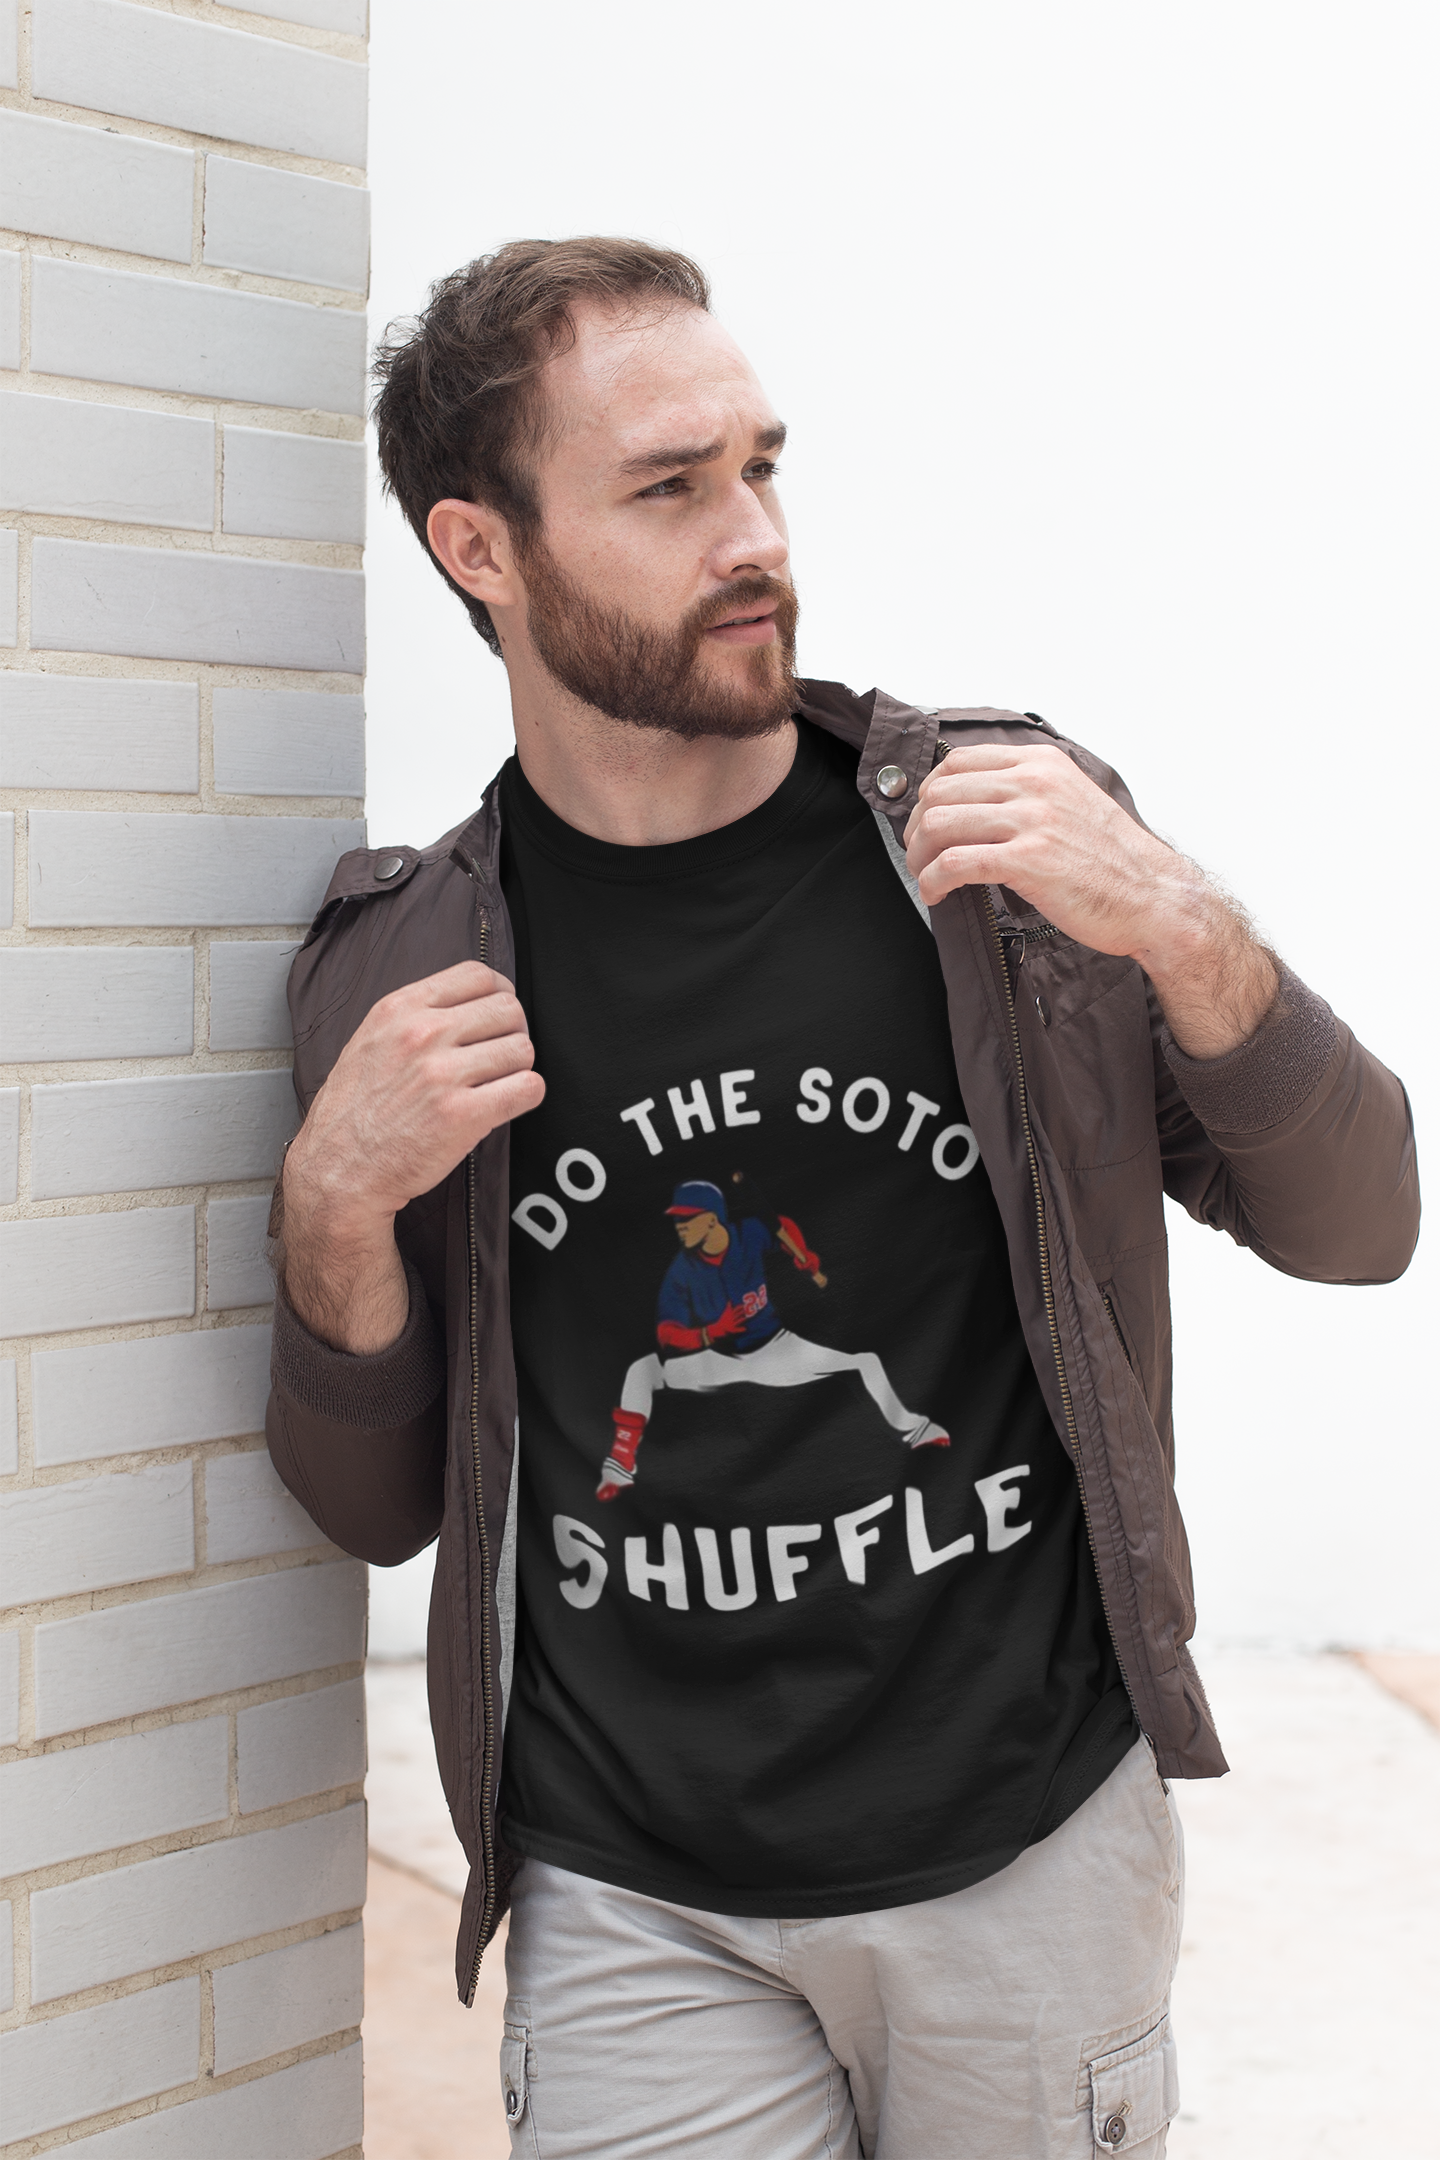 Do the soto shuffle shirt